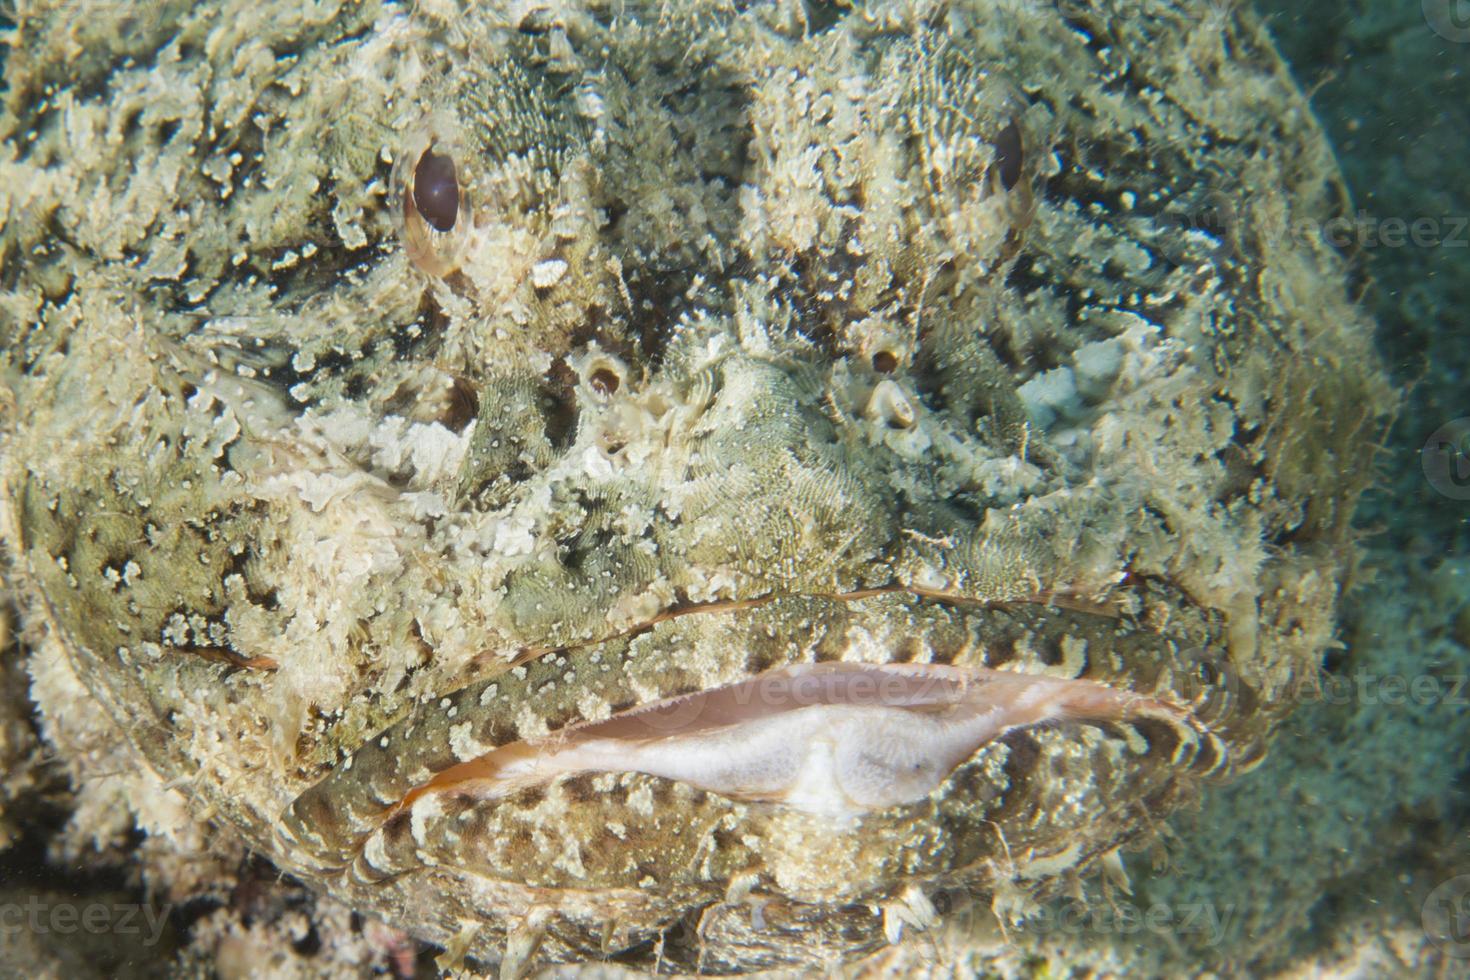 A scorpion fish photo